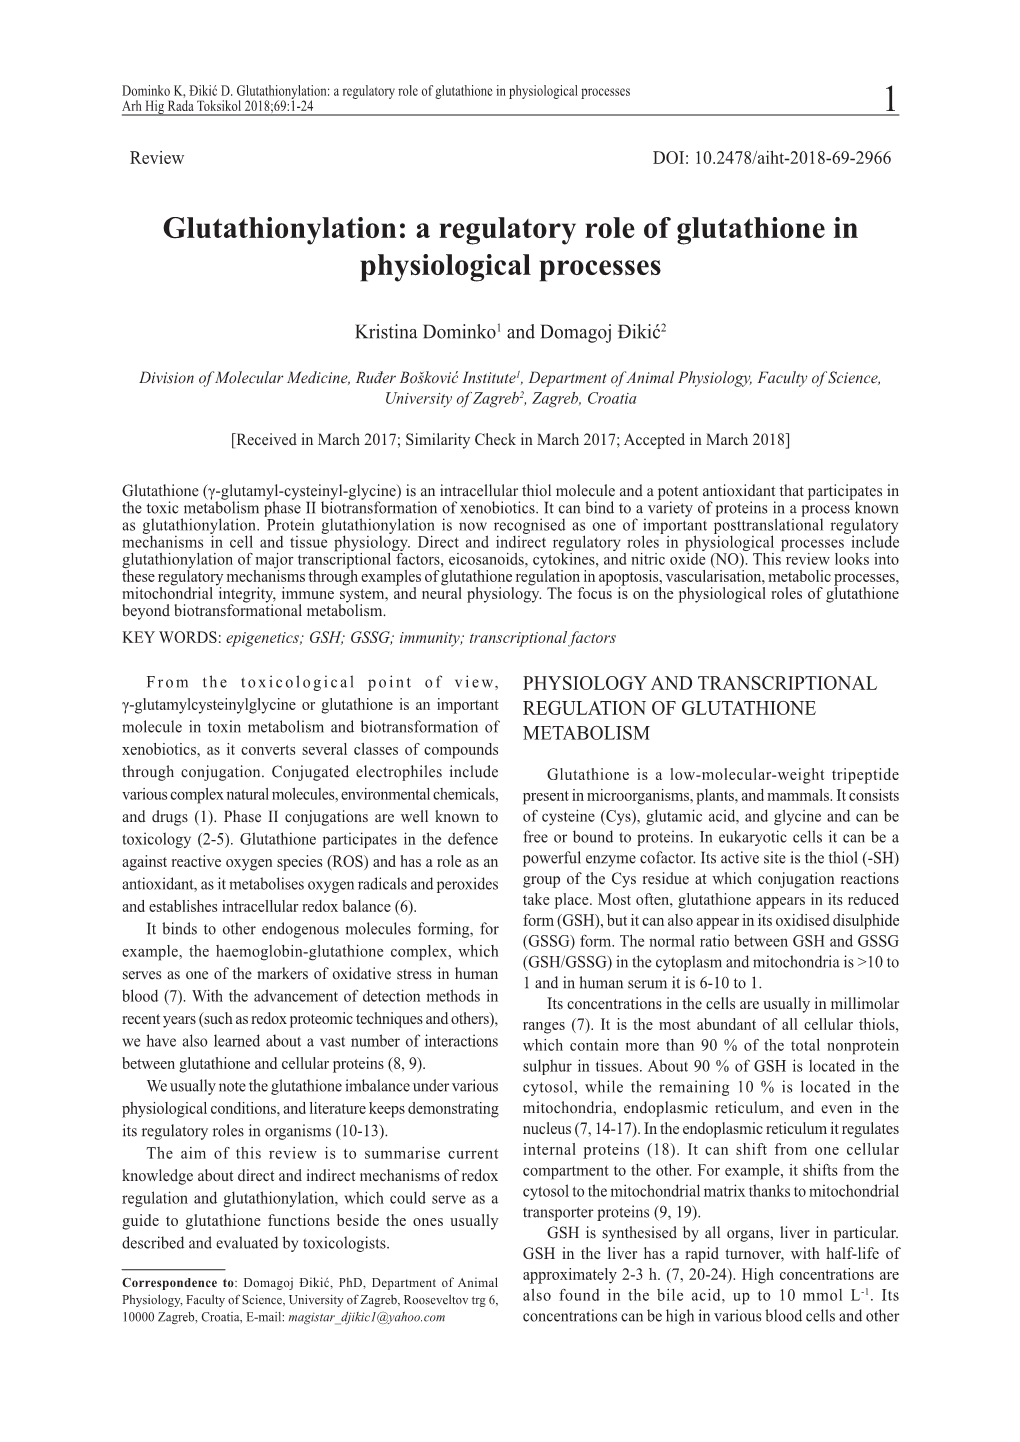 Glutathionylation: a Regulatory Role of Glutathione in Physiological Processes Arh Hig Rada Toksikol 2018;69:1-24 1